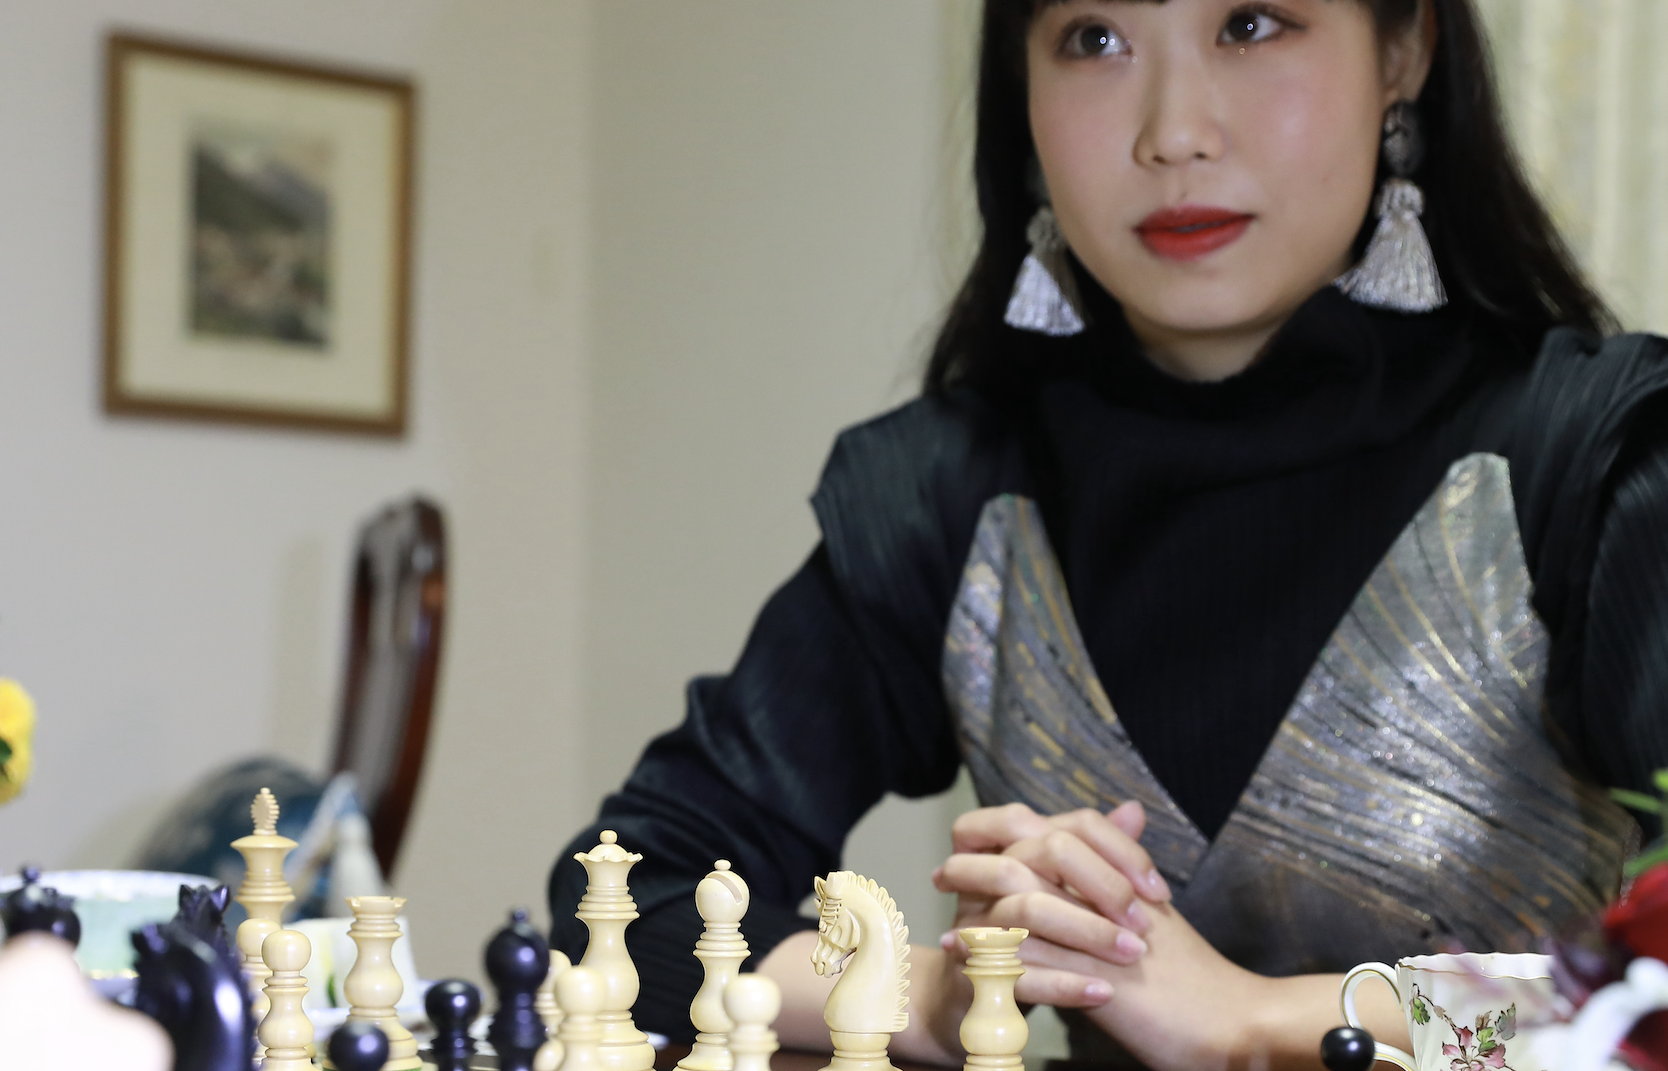 女性に特化したチェススクールにて
チェスと教育・アート・エンターテインメントを融合した
「チェスエデュテインメント」を3月より提案